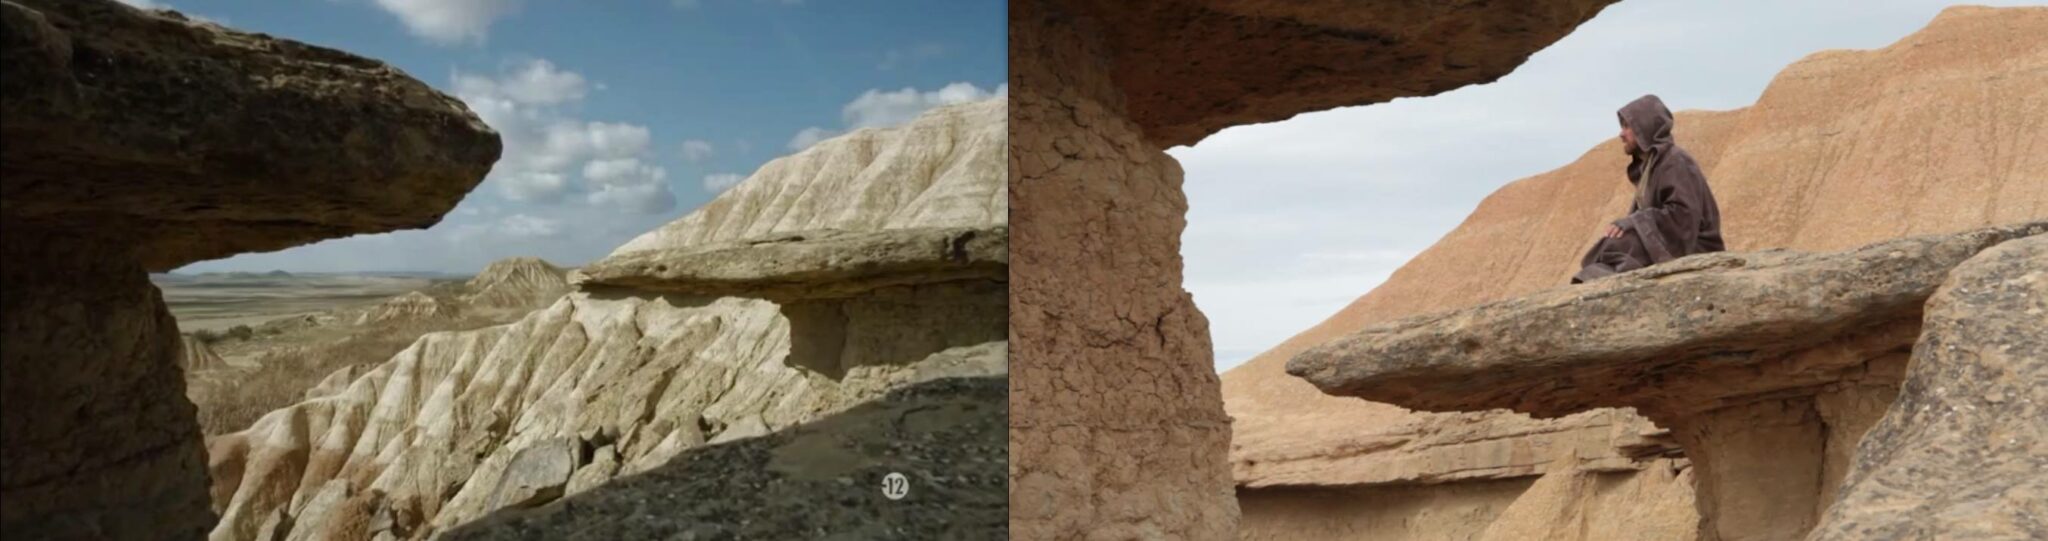 Le rocher sur lequel s'assit Obi-Wan est apparu dans la série Game of Thrones.